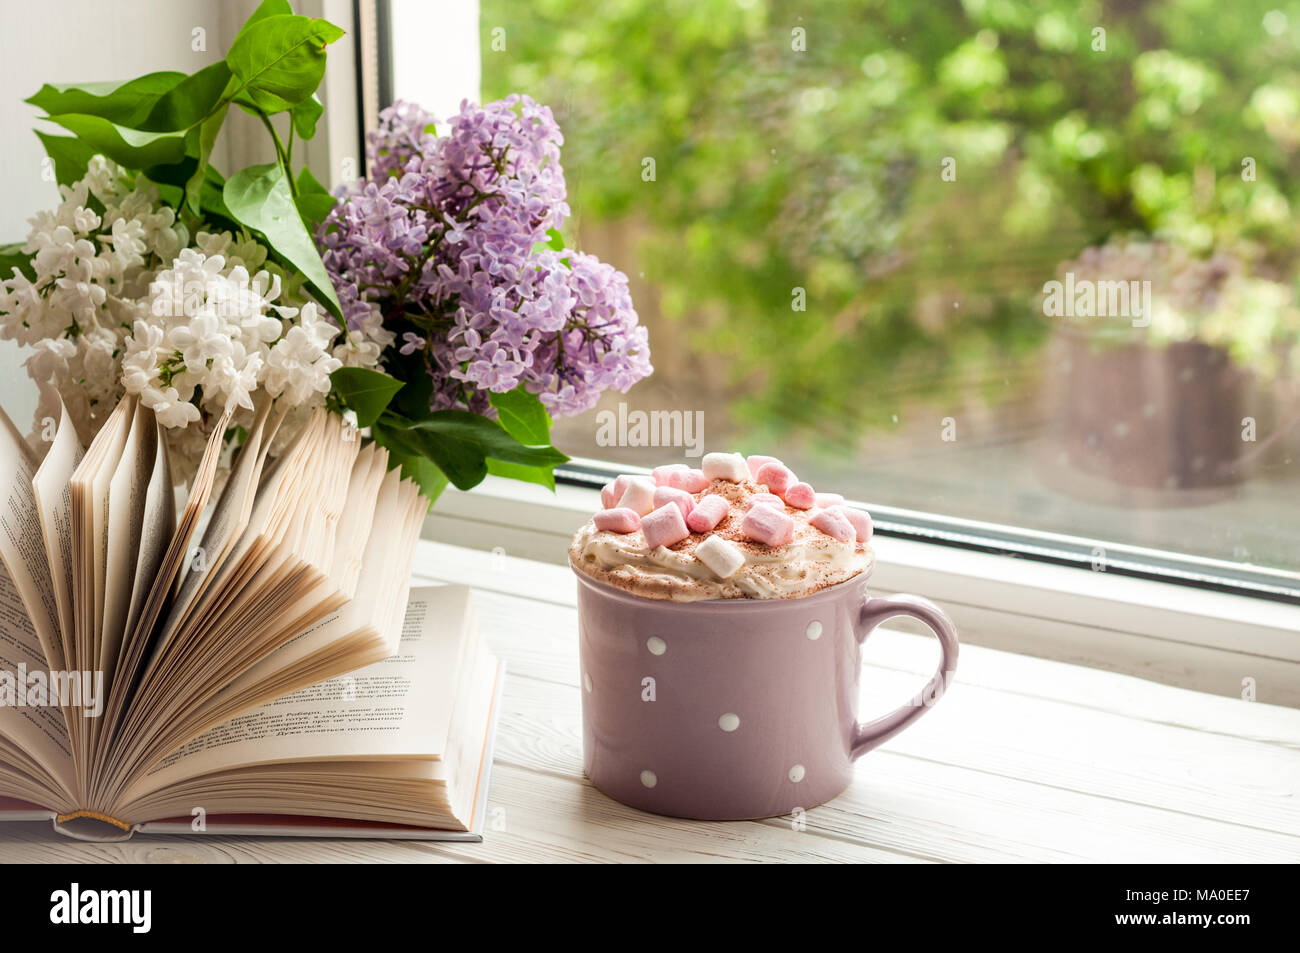 Kaffeetasse mit Eibisch, offenes Buch und Blumen Blumenstrauß auf der Fensterbank. Konzept gemütliches Heim Frühstück und lesen. Sommer oder Frühling Stockfoto